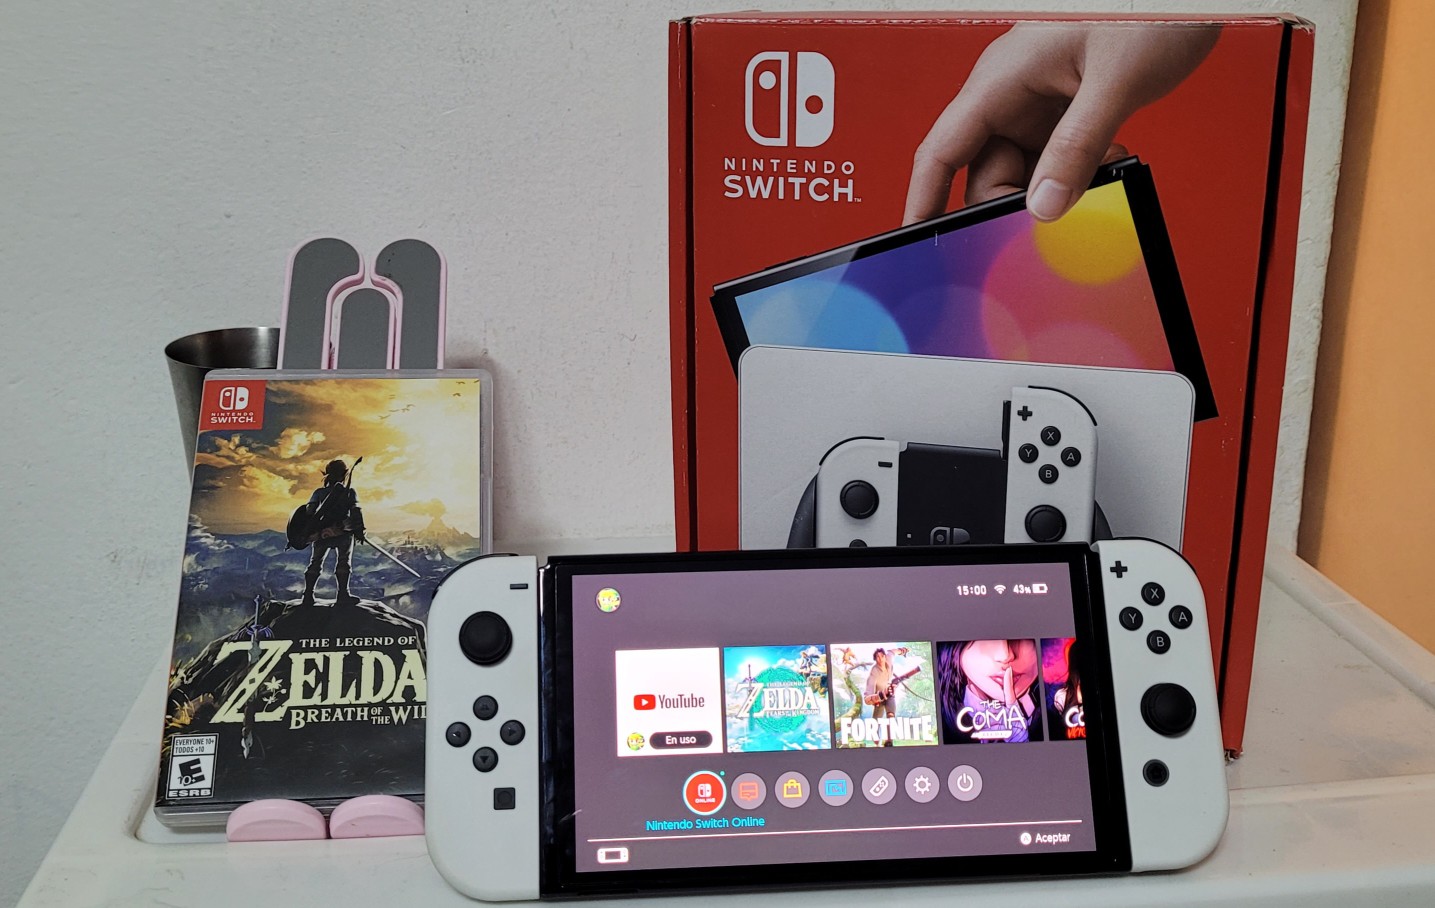 consolas y videojuegos - Nintendo Switch oled Completo con un juego Zelda